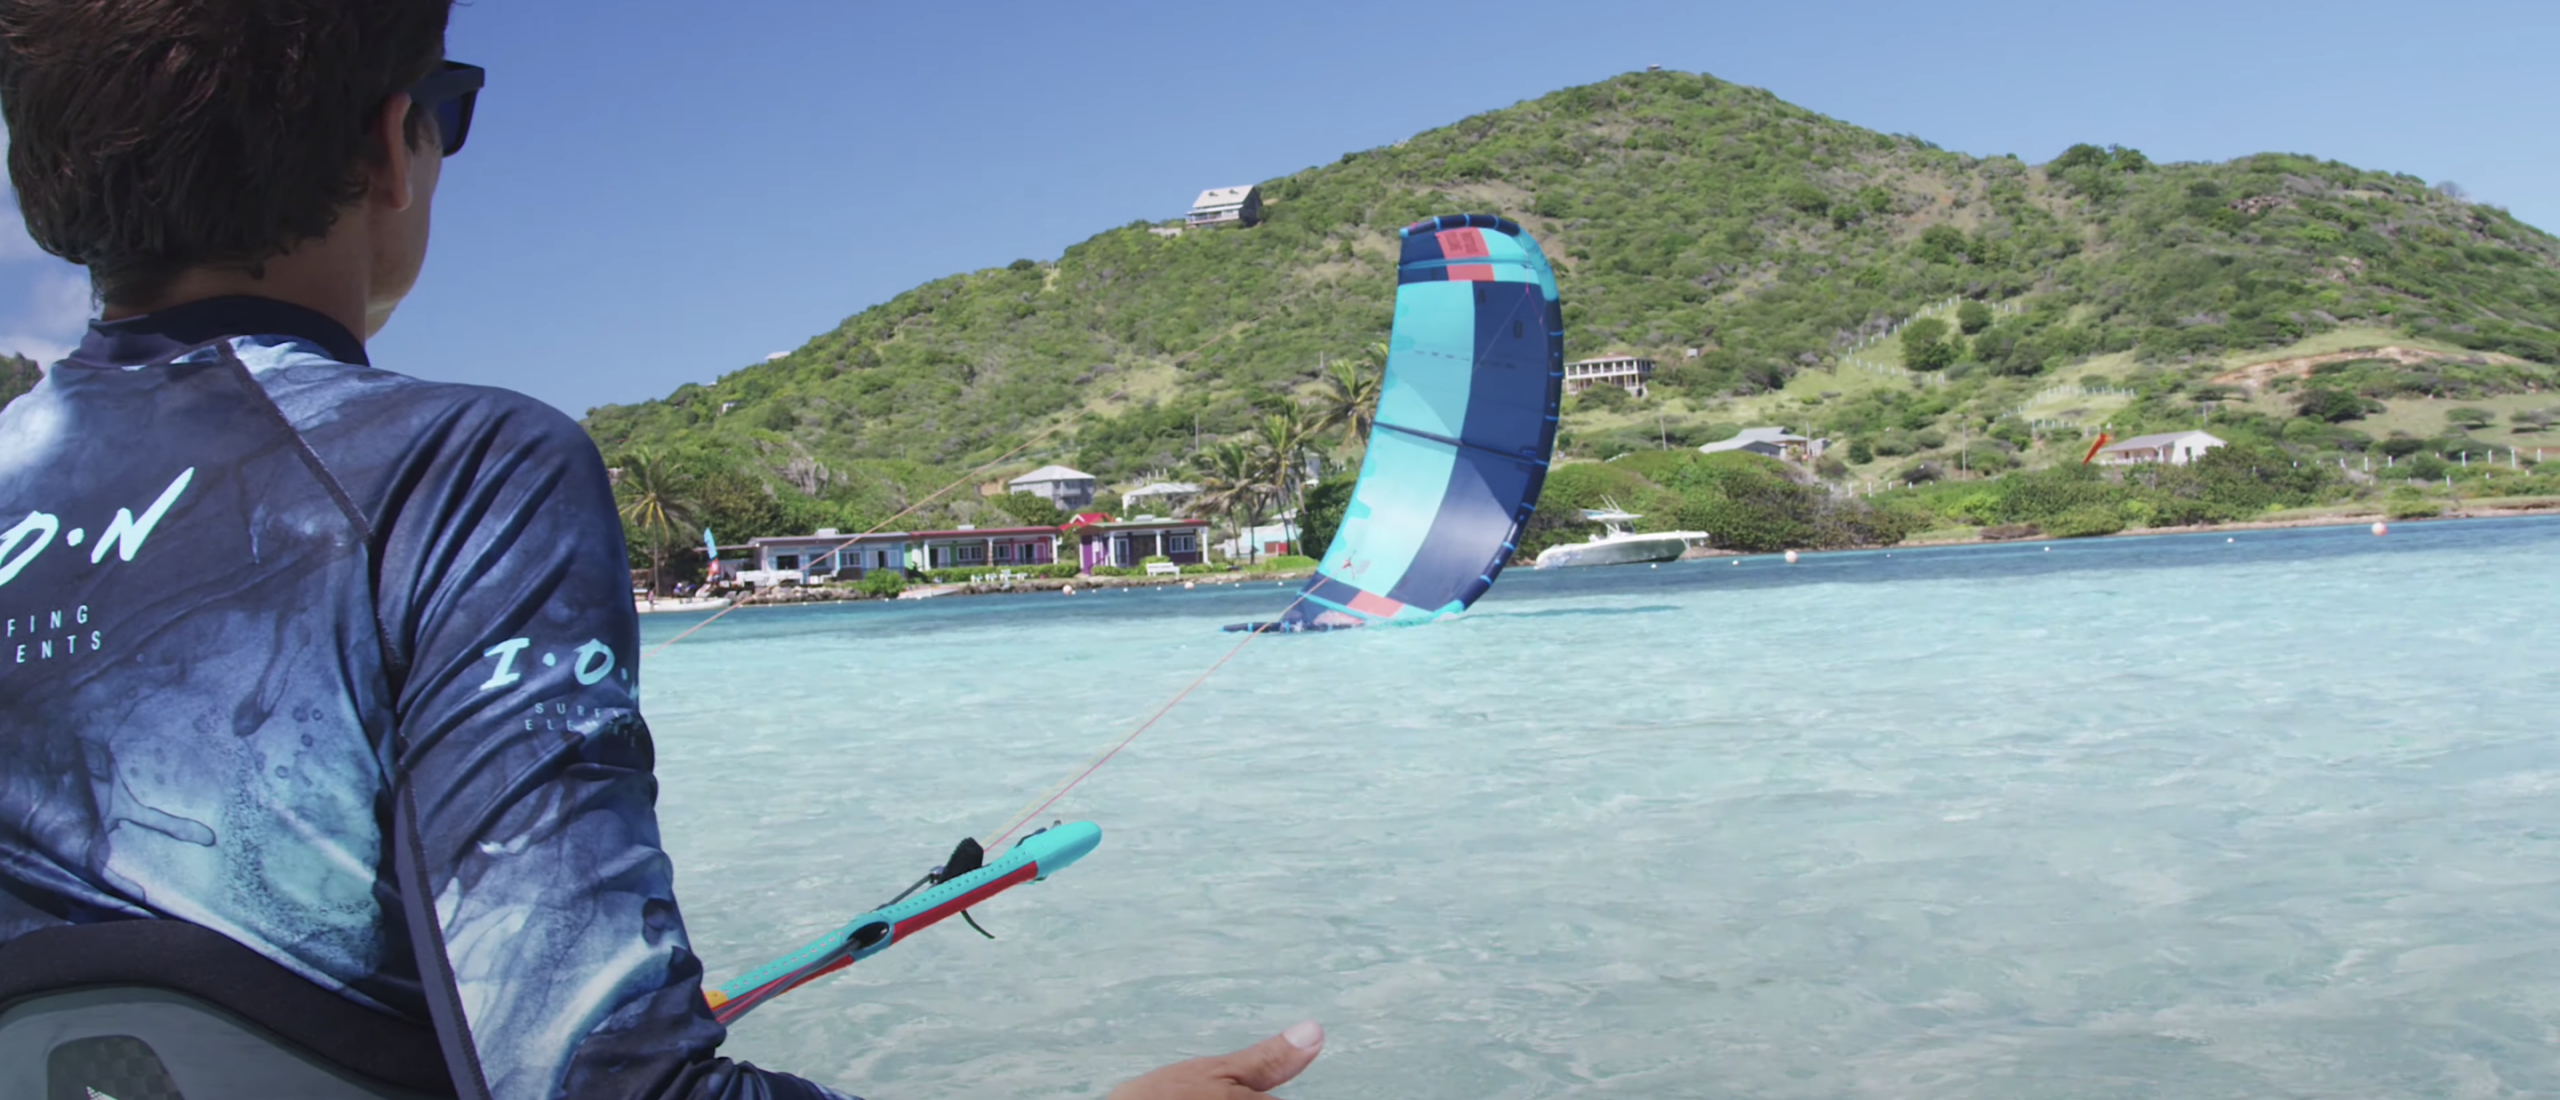 Herstarten kite uit het water